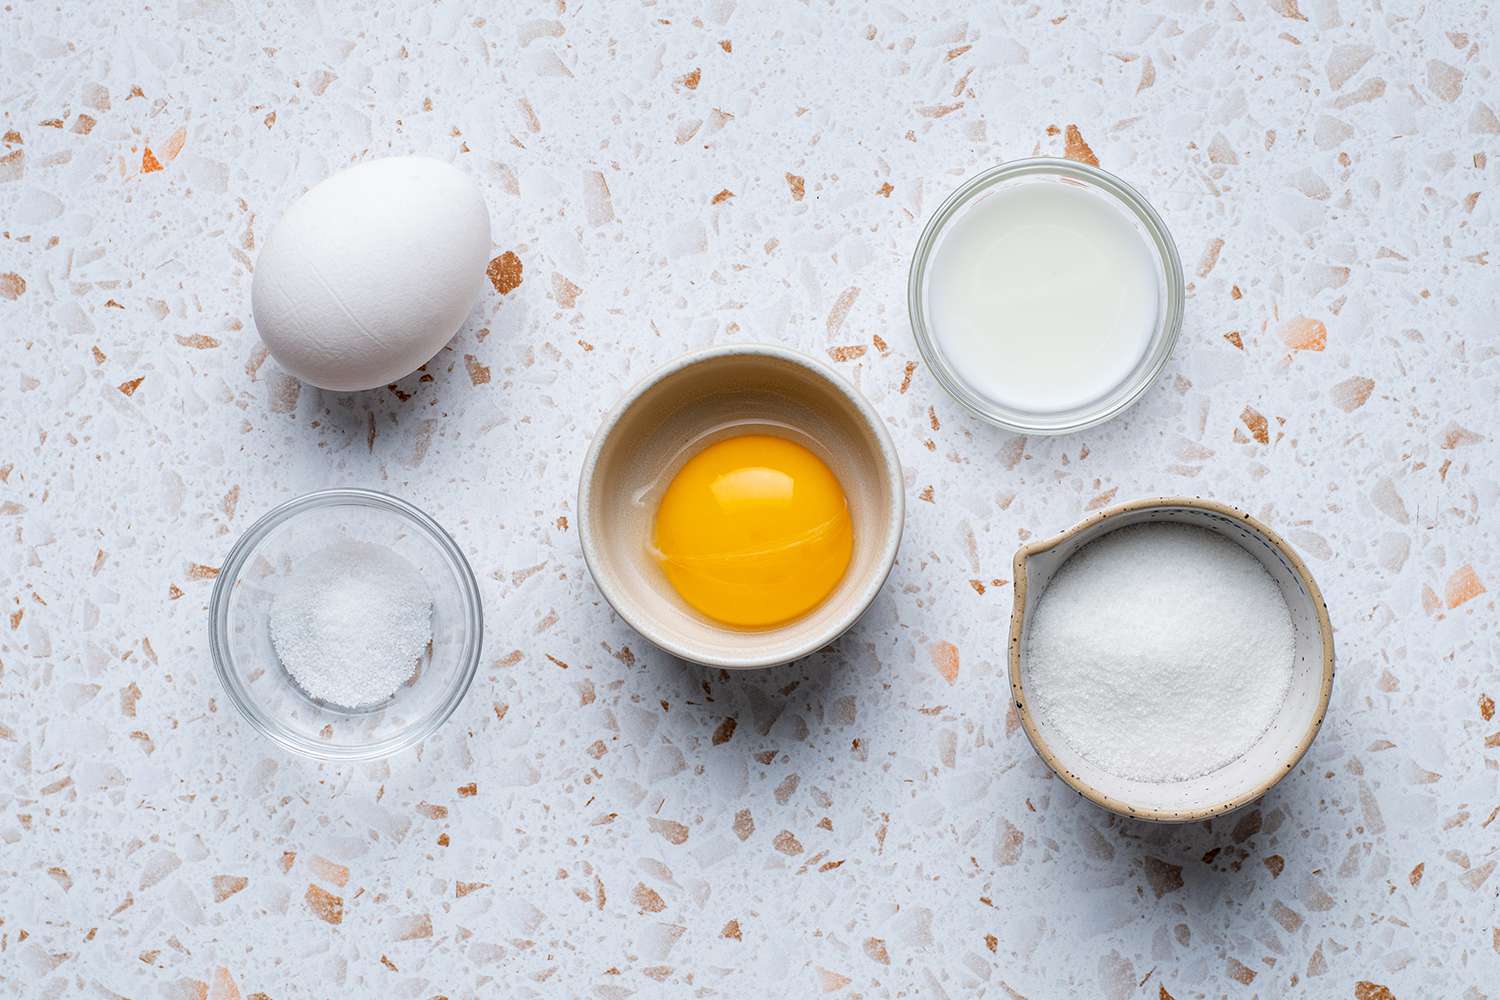 ingredients to make egg wash